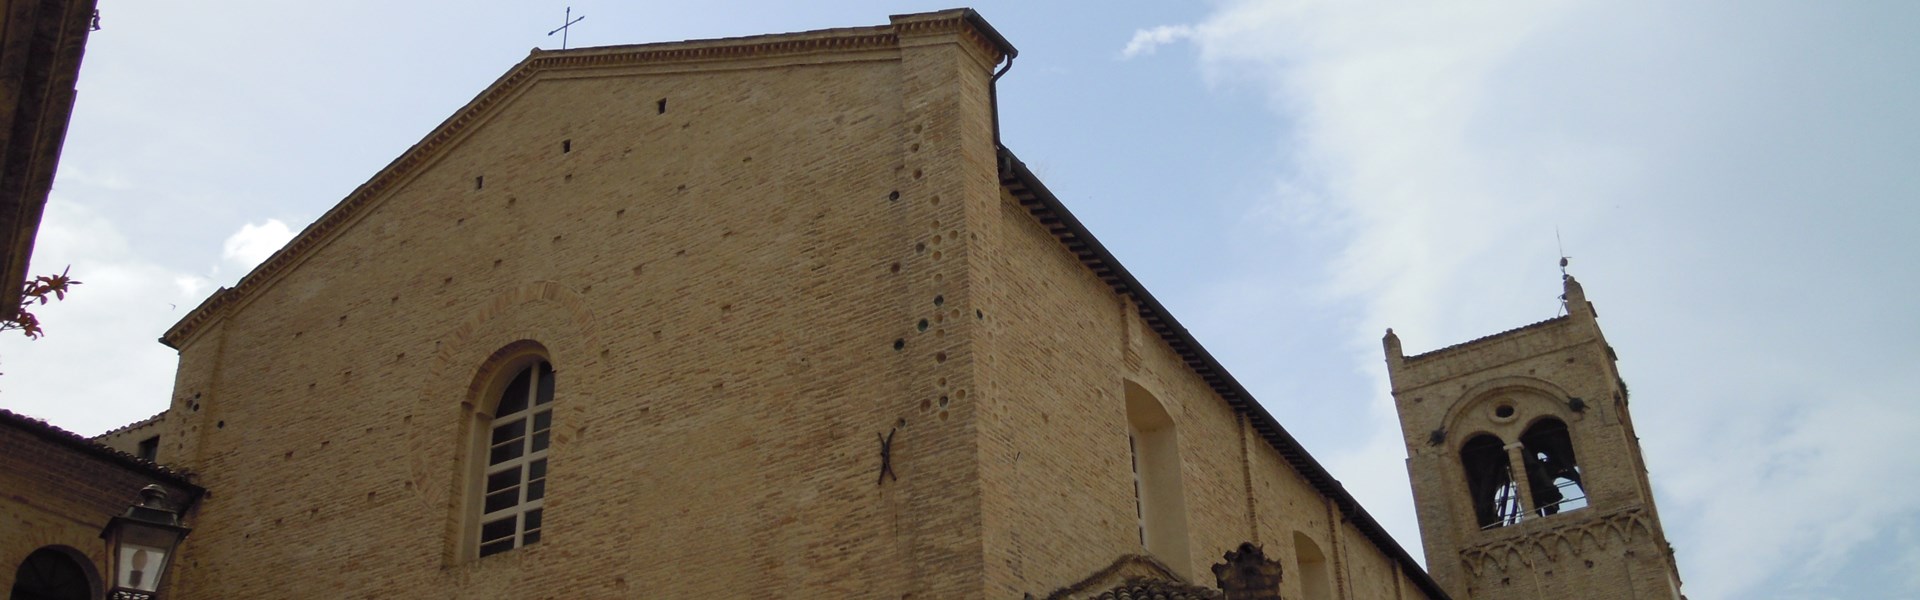 San Severino Marche - Chiesa Concattedrale di S. Agostino